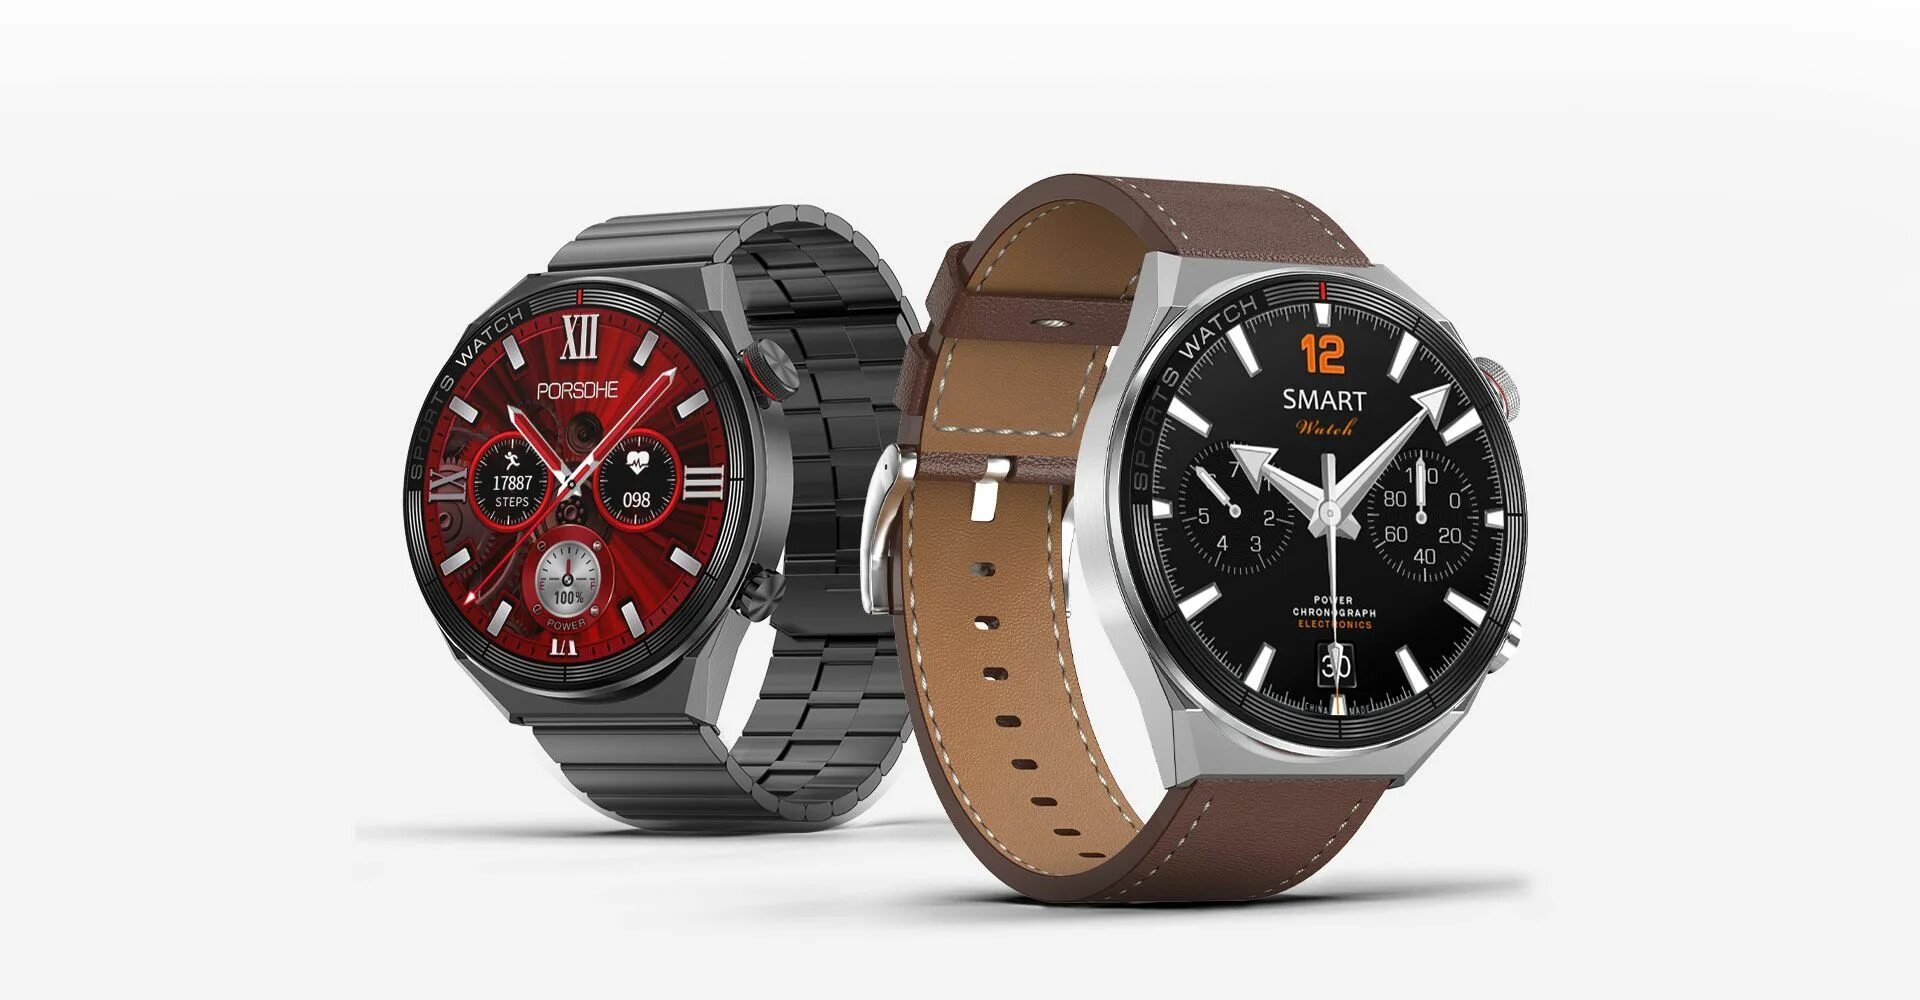 Смарт часы dt ultra. Смарт вотч dt3 Max. Smart watch dt3 Max Ultra. Смарт часы DT no.1 3 Max Ultra. Smart watch DT no1-3 Max.